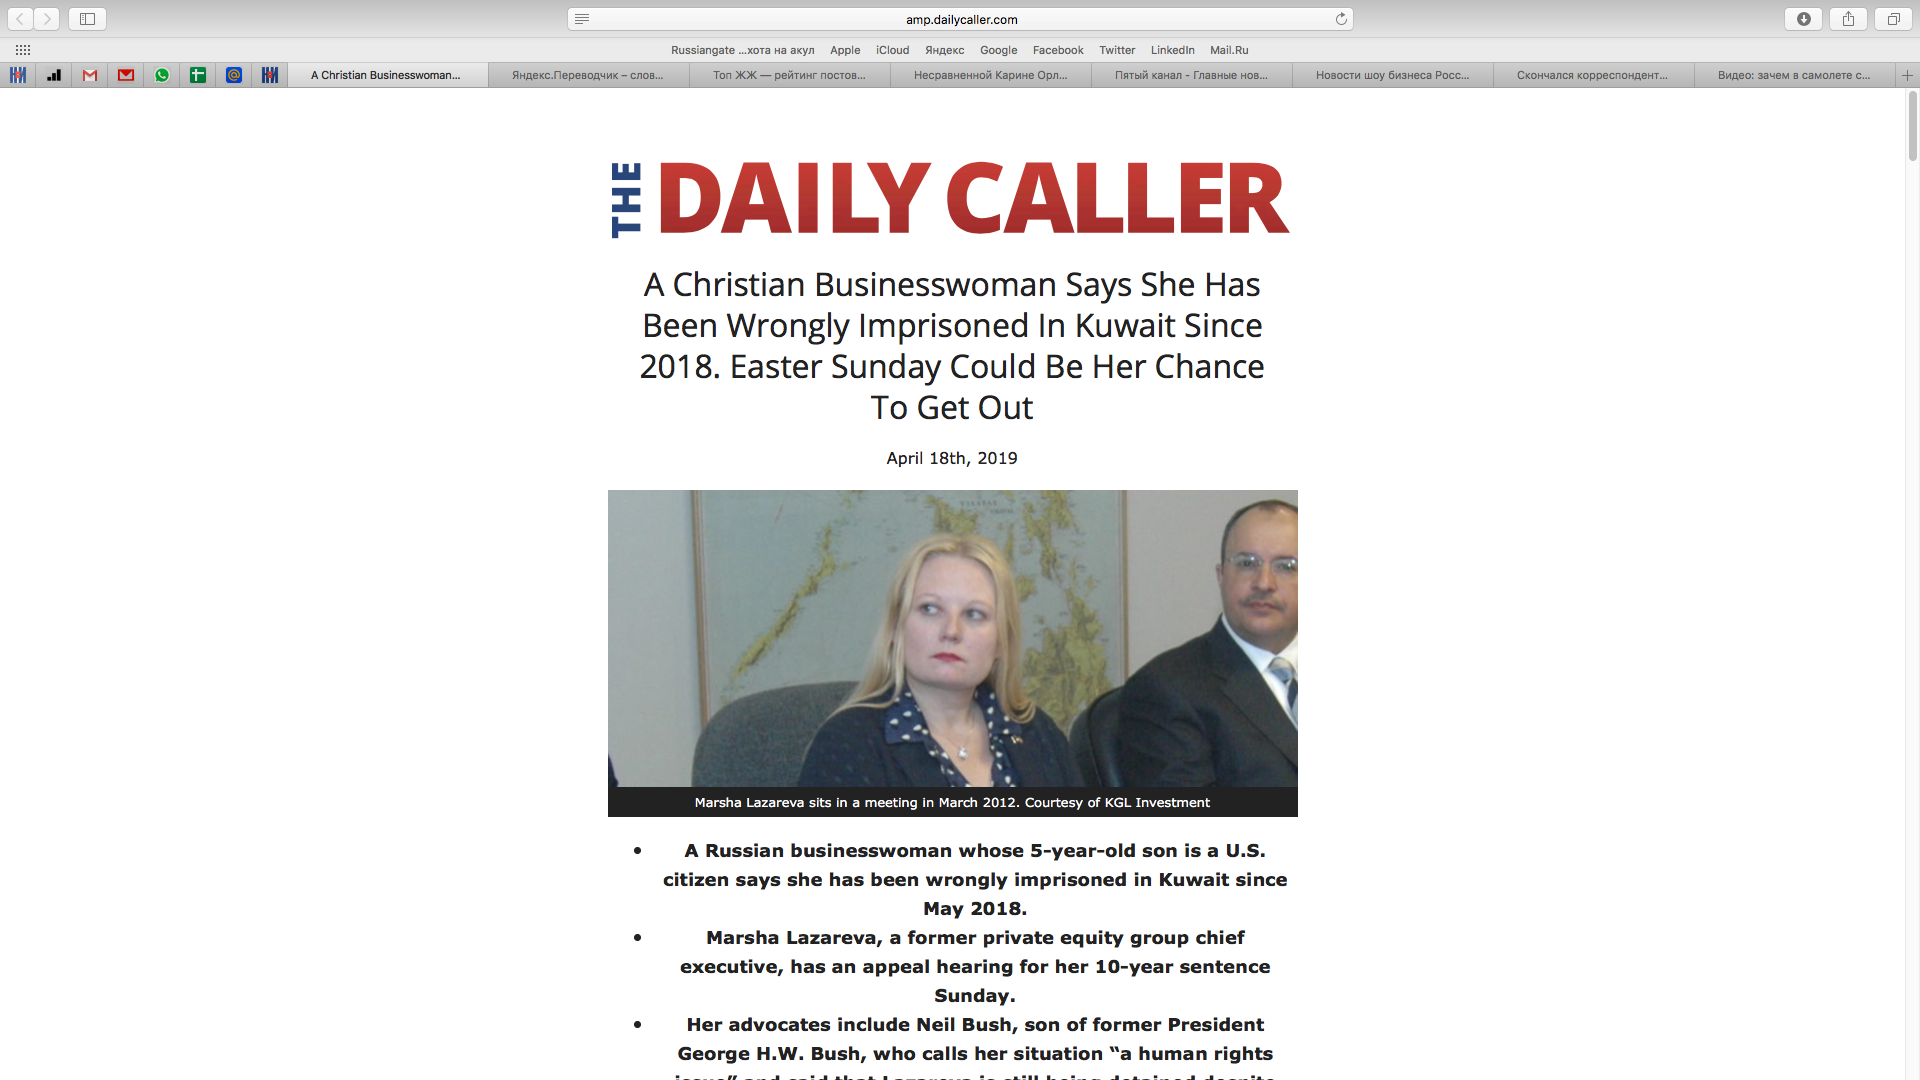 The Daily Caller: освободят ли Марию Лазареву в Пасхальное Воскресенье?